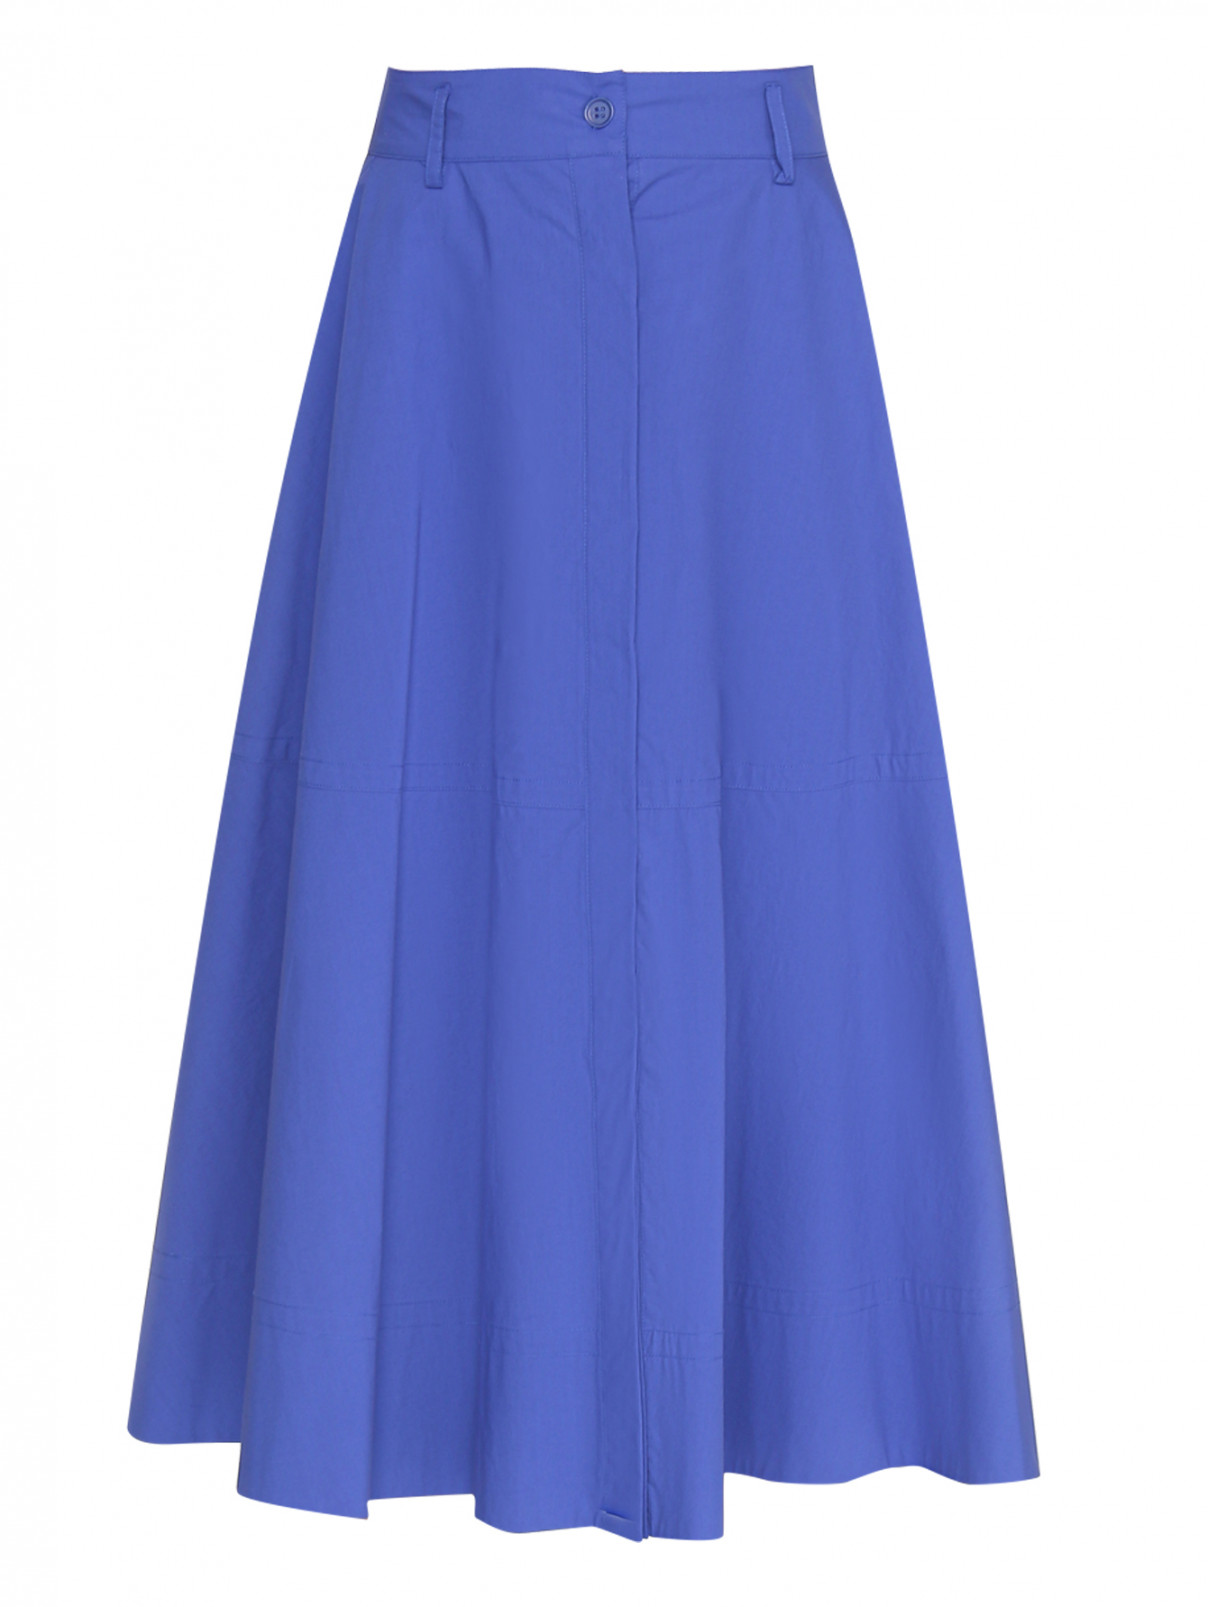 Однотонная юбка из хлопка P.A.R.O.S.H.  –  Общий вид  – Цвет:  Синий